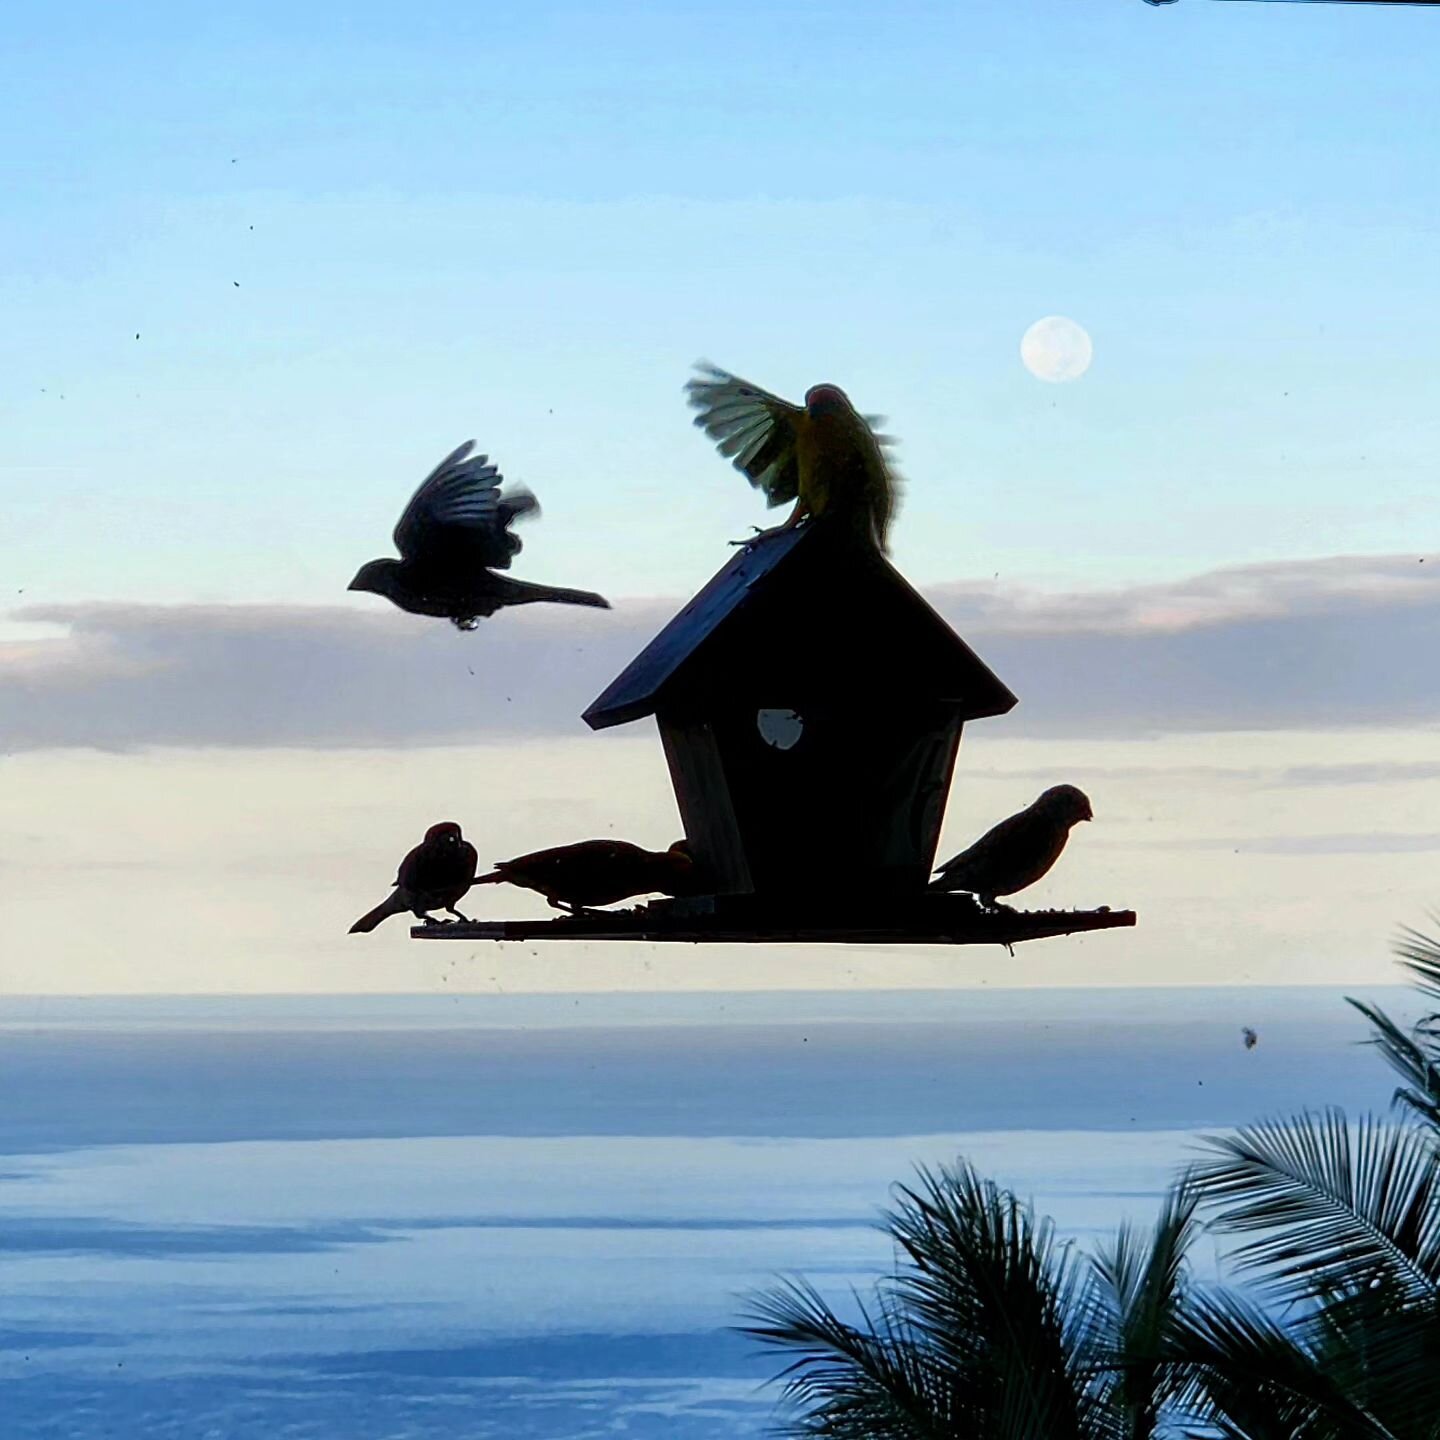 Full Moon setting 🌕 #moon #moonsetting #glow #huntersmoon #birding #birdwatchers #moonlight #moonlovers #birdphotography #birdsofinstagram #birdslover #birdfeeder #pacific #Oceanview #mooning #hawaiibirds #birdfriends